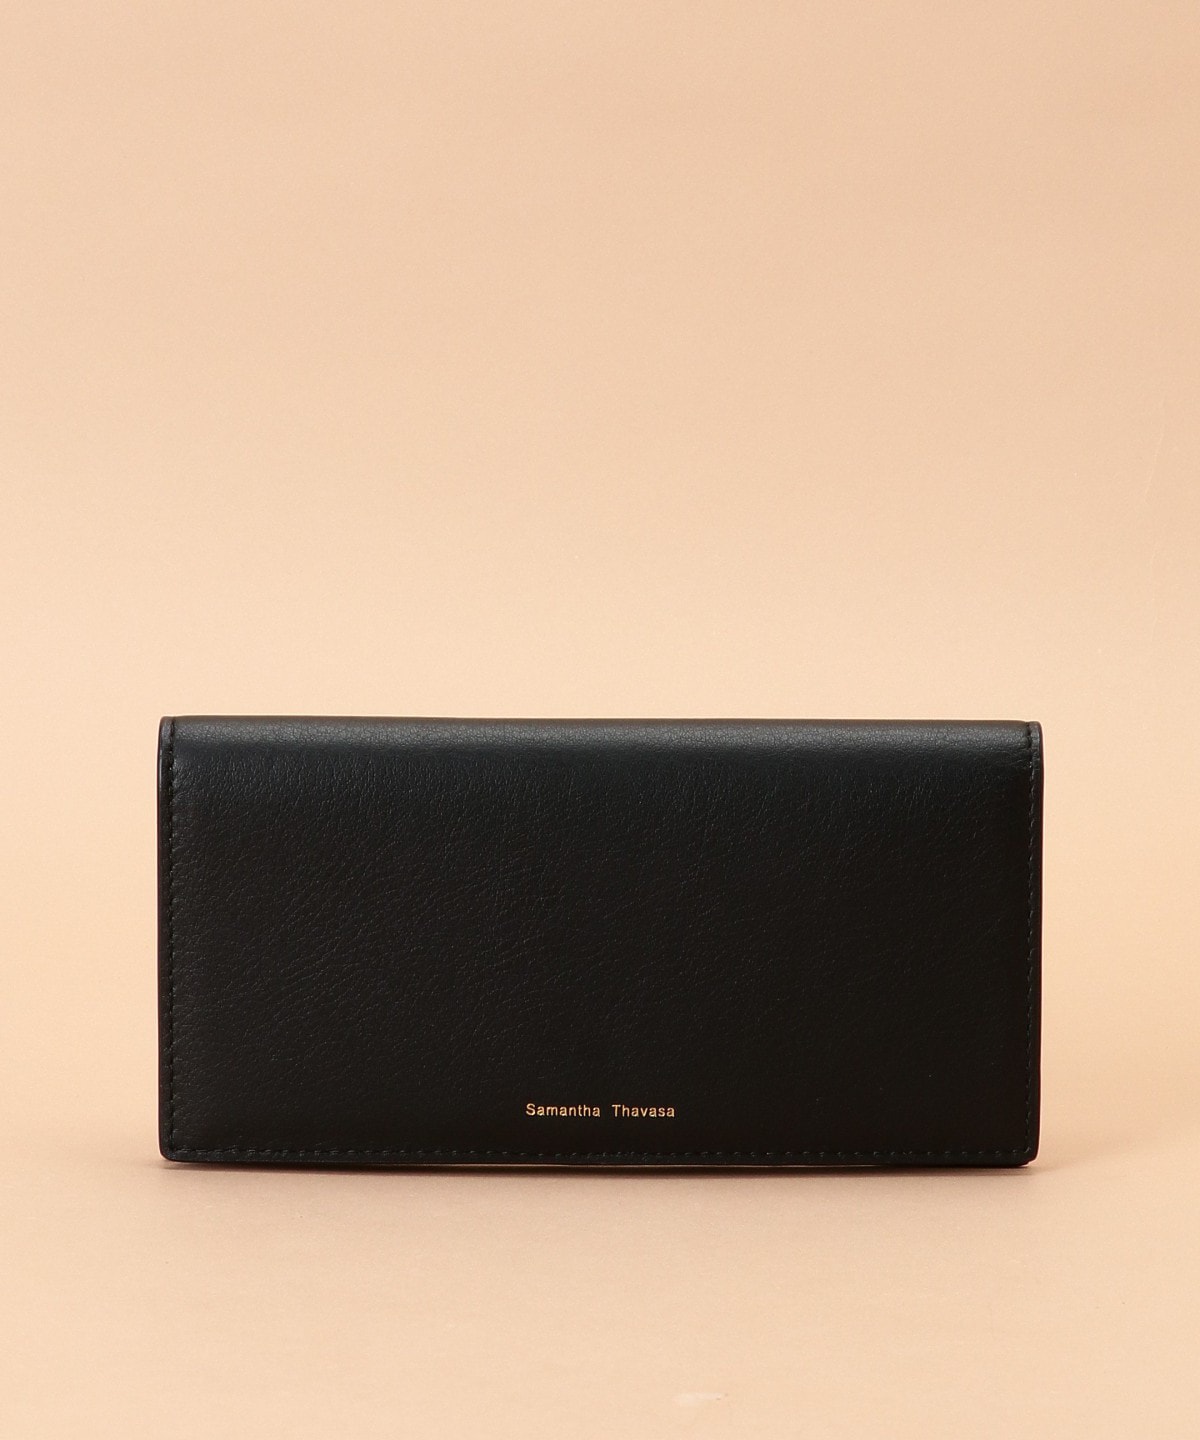 イタリアンレザー ブック型長財布